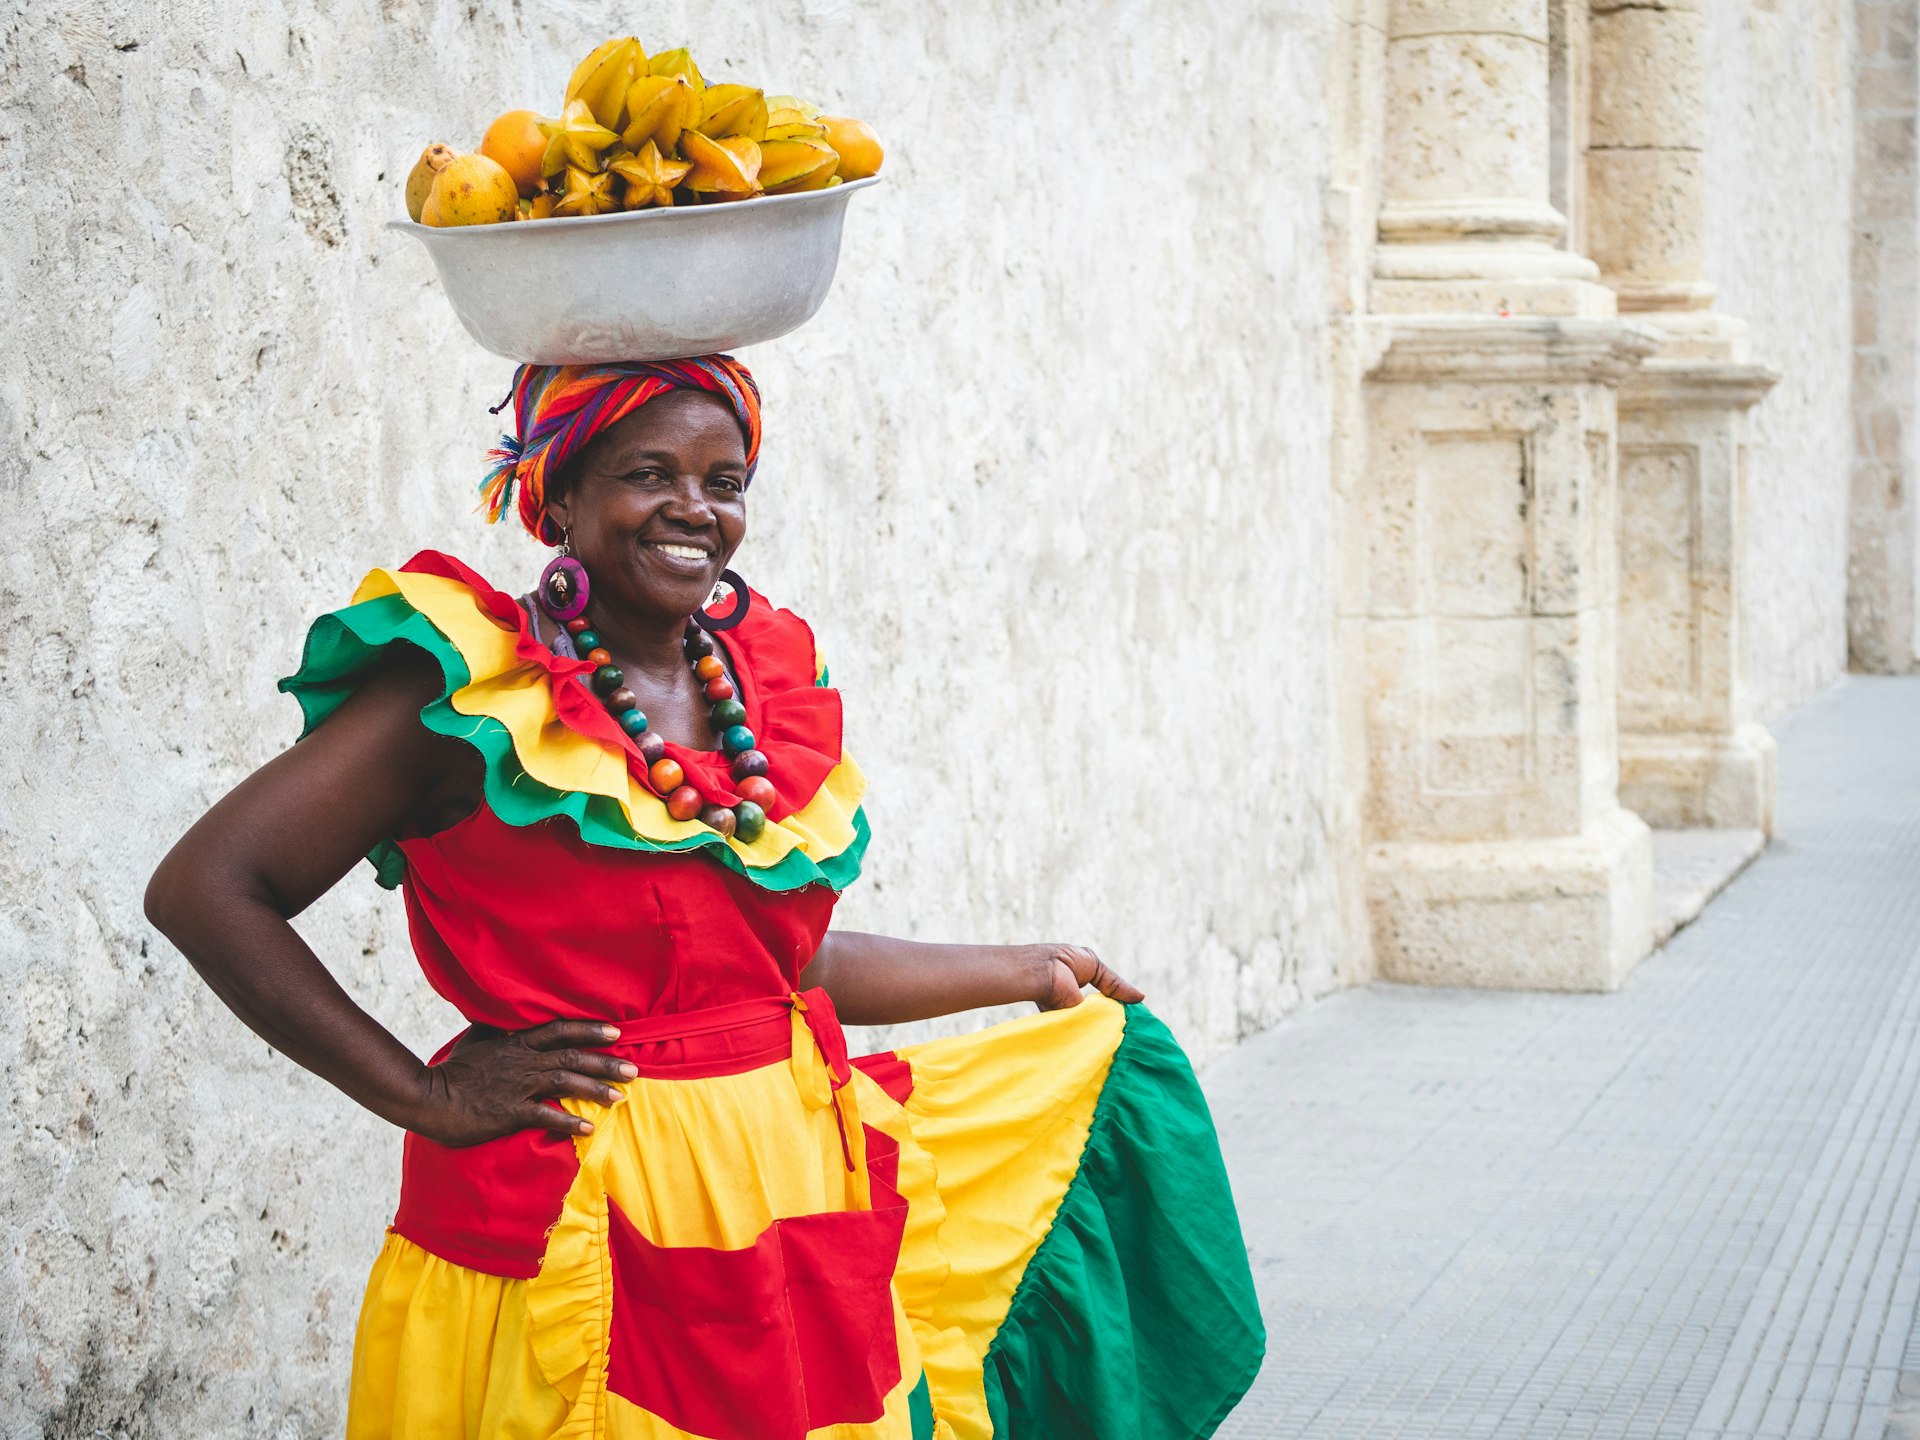 Traditional fresh fruit street vendor in Cartagena de Indias, Colombia